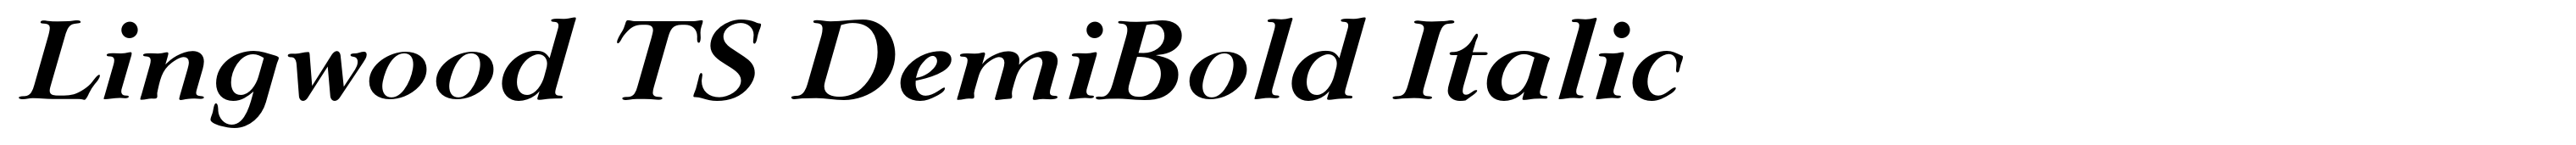 Lingwood TS DemiBold Italic